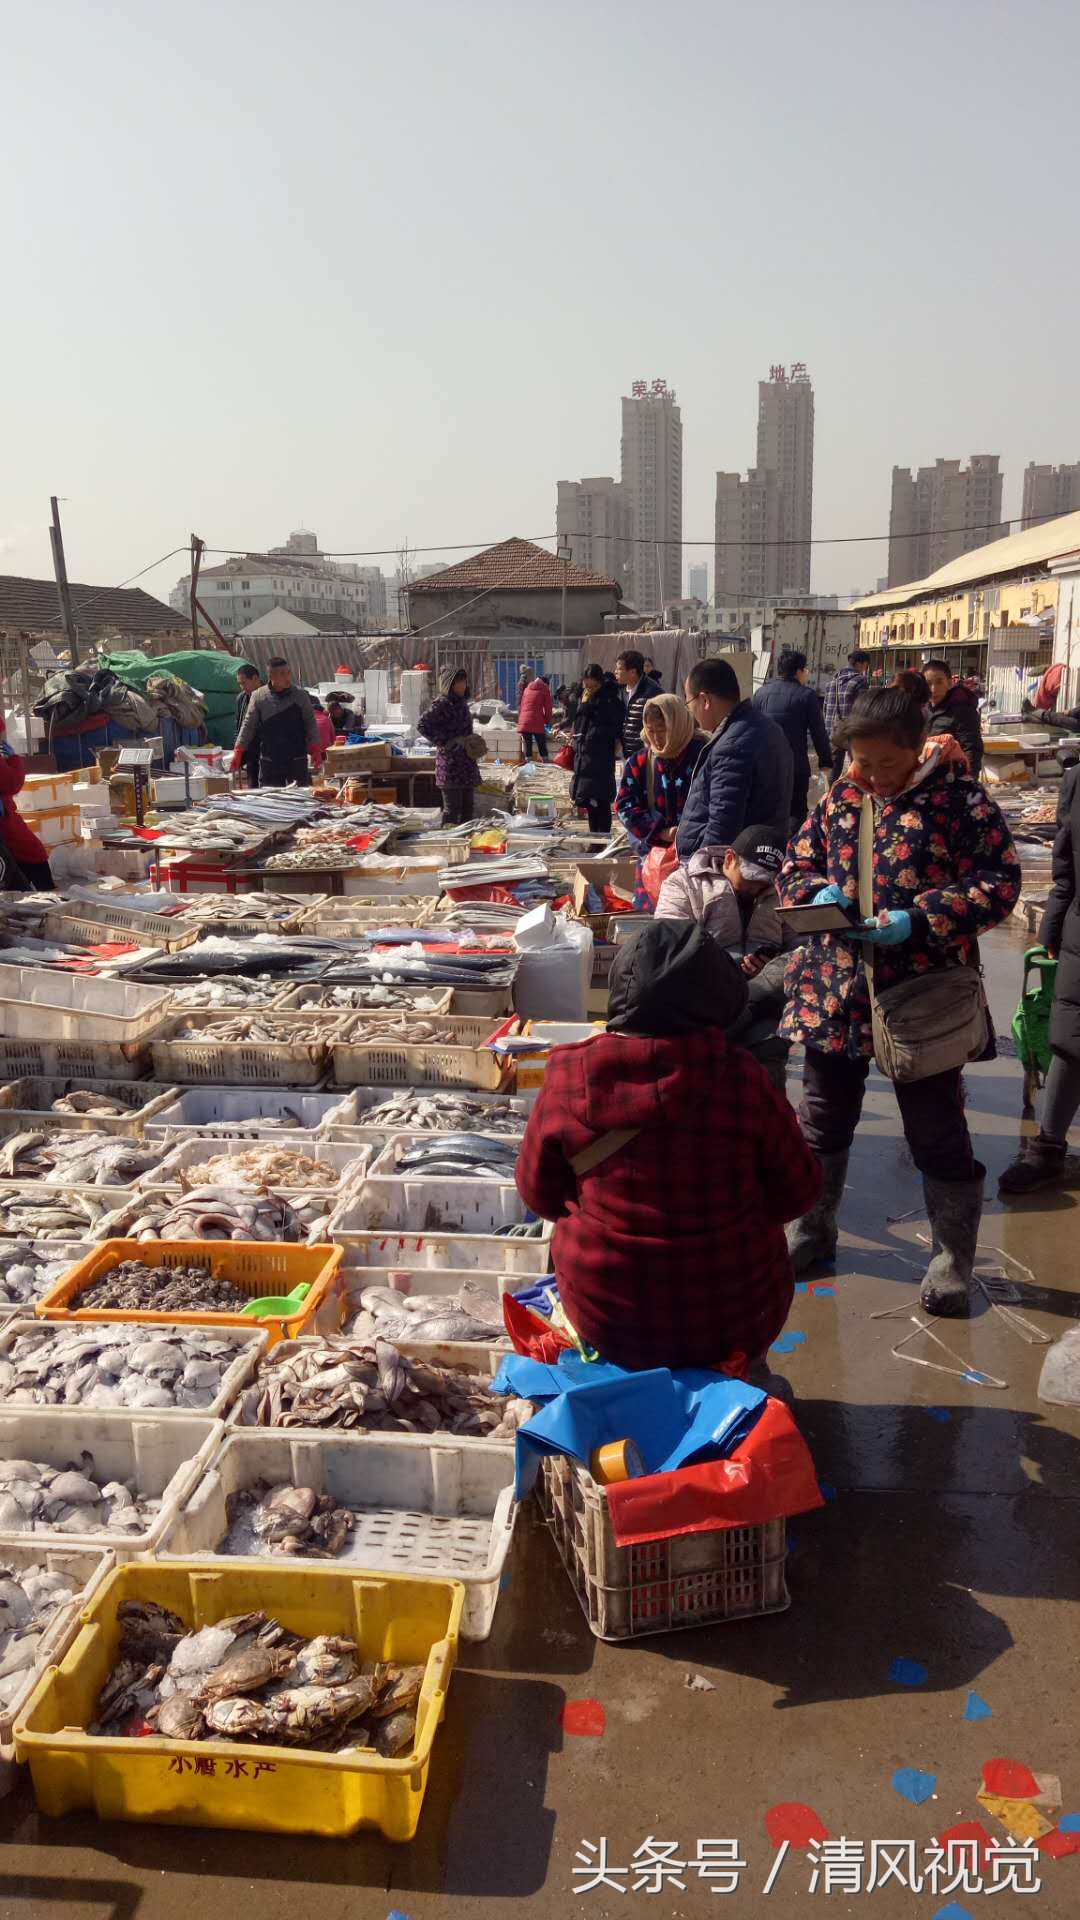 眼看这就是狗年春节了,在山东省日照市十九海鲜批发市场,前来采购海鲜